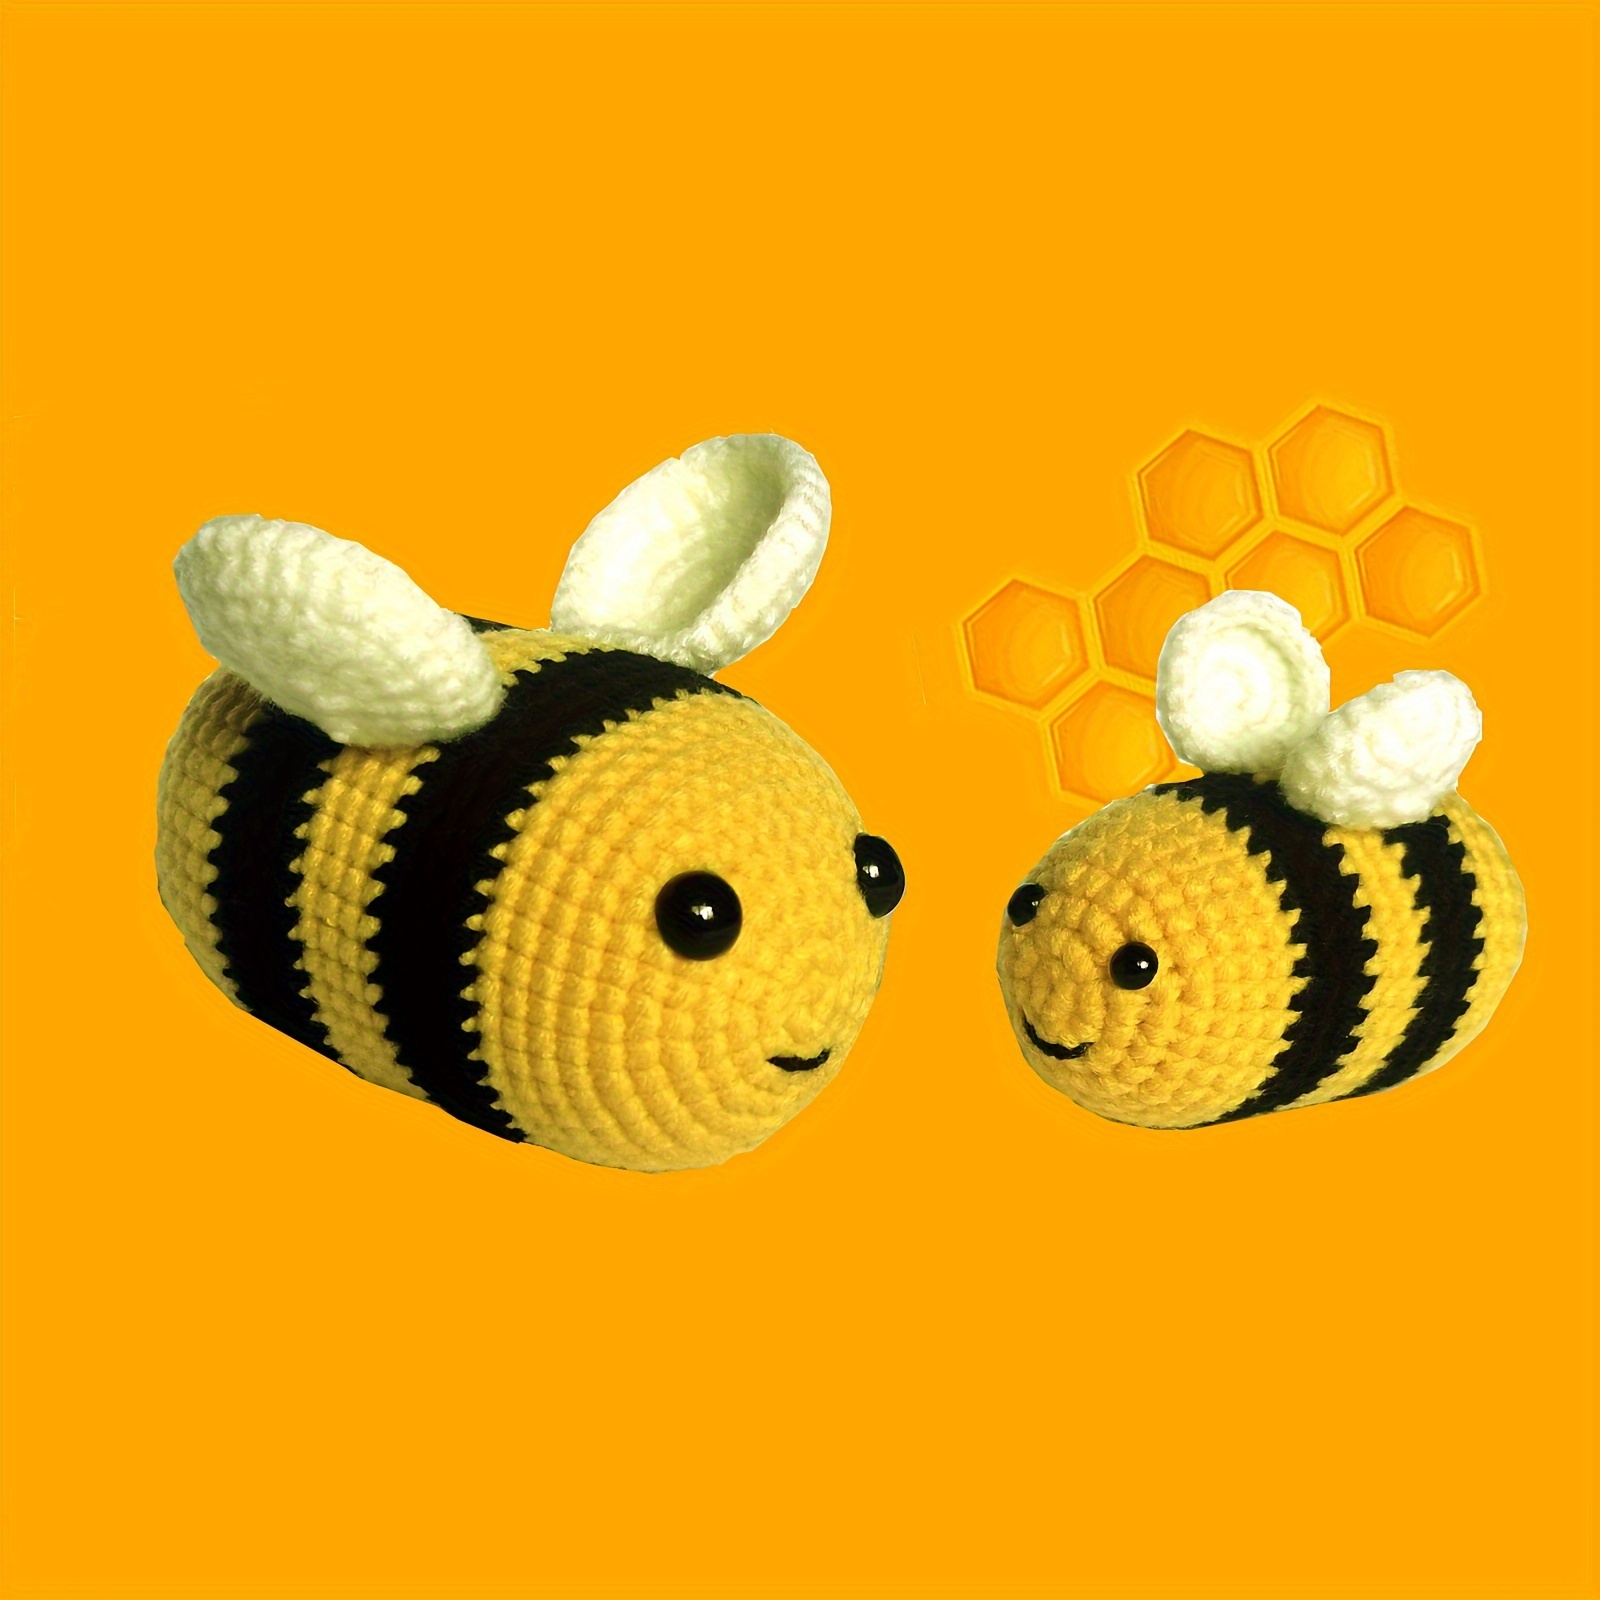 amigurumi kit - crochet bumble bee craft kit